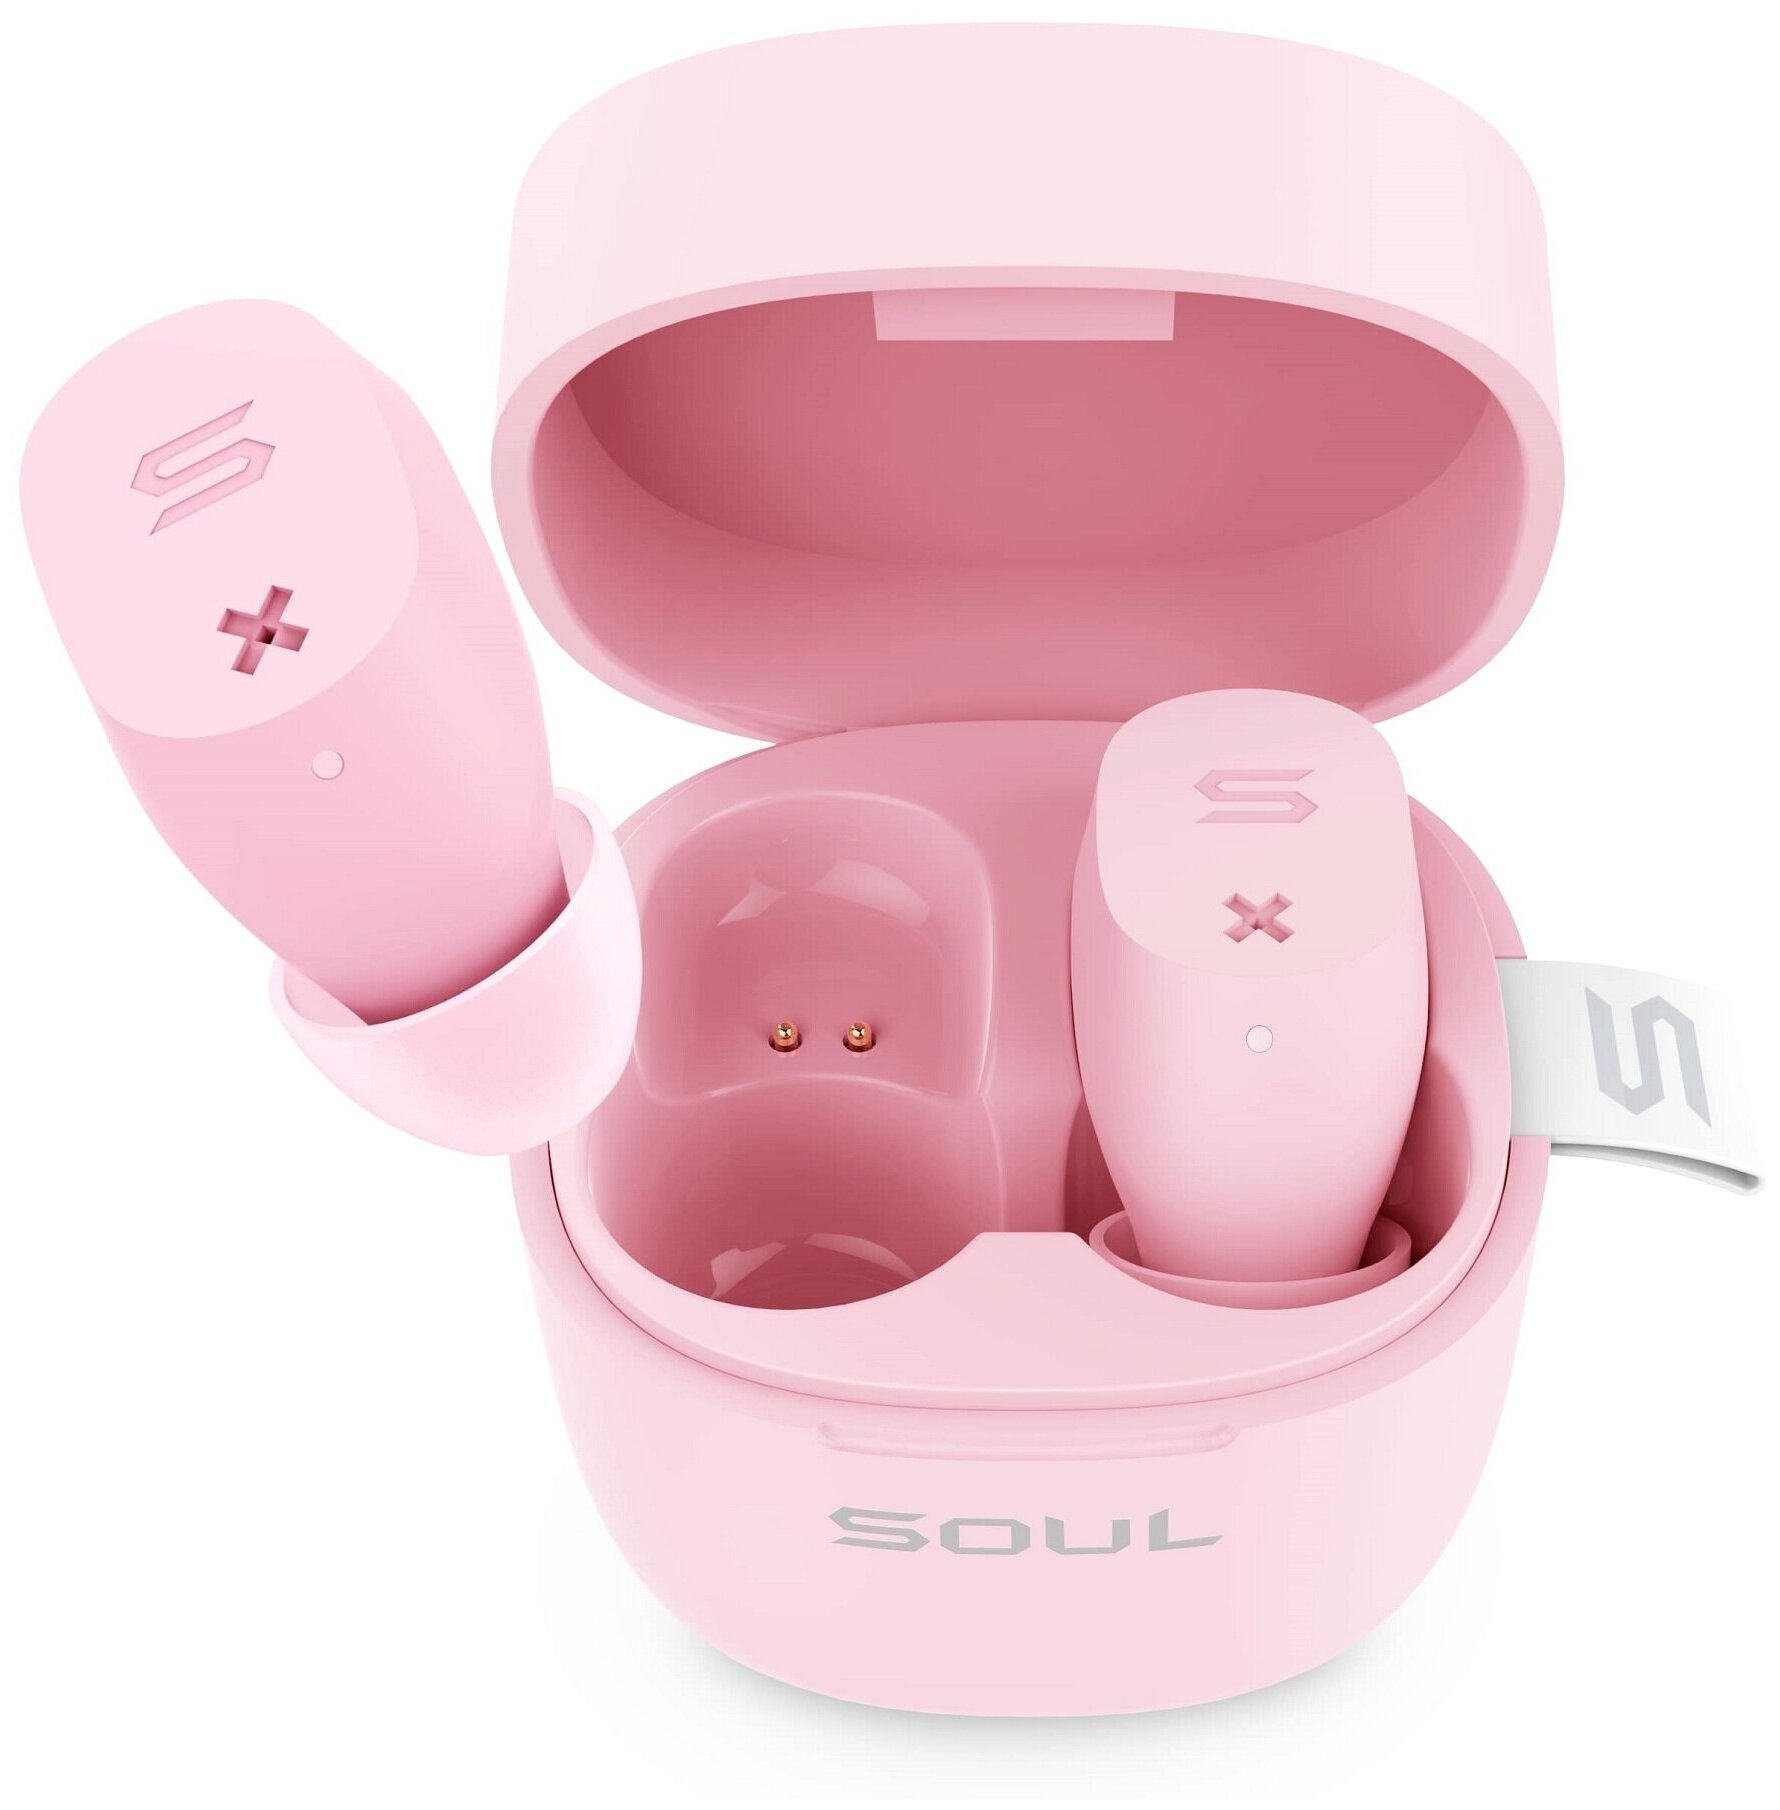 Гарнитура Soul ST-XX, Bluetooth, вкладыши, розовый матовый [80000625]